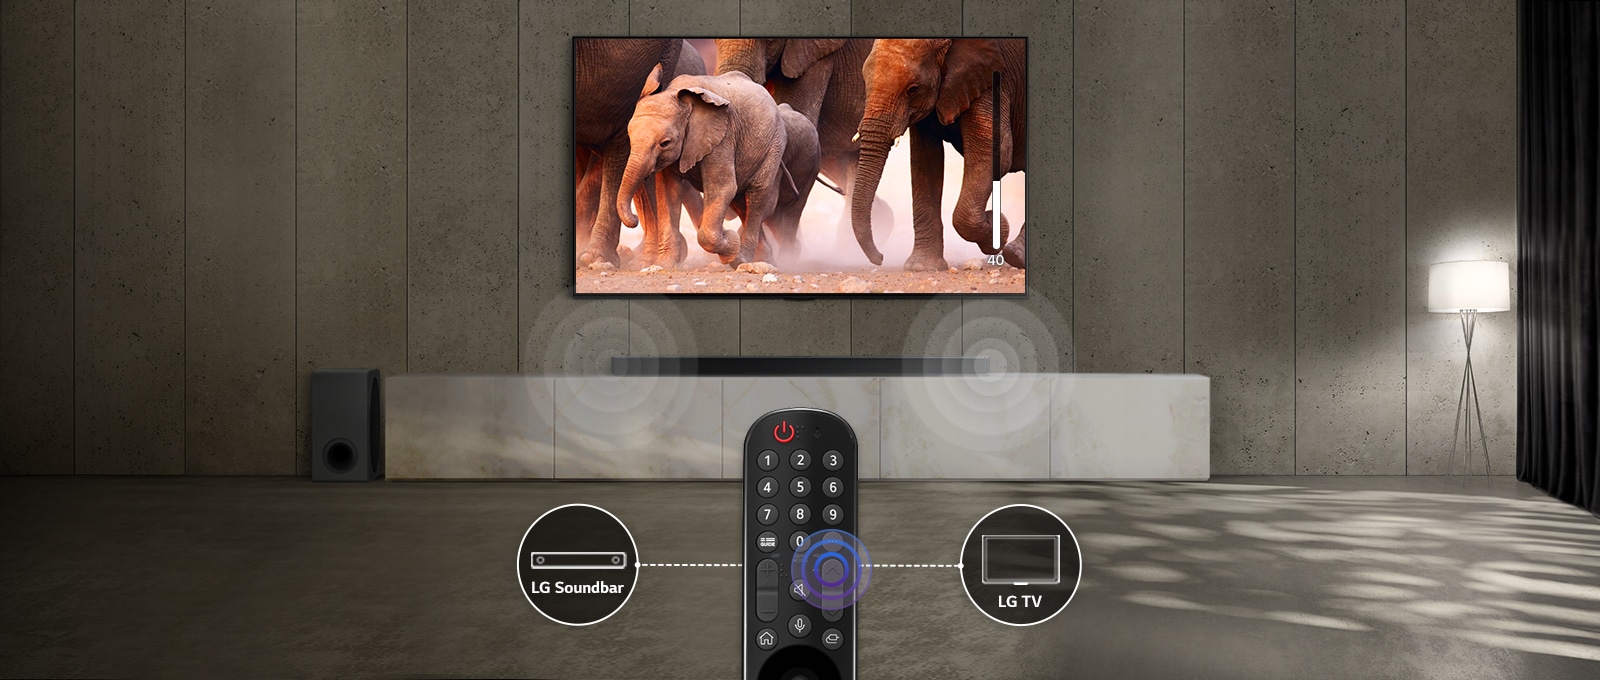 Õrna valgusega ruumis on teler, mis näitab mööda kõndivaid elevante. Teleri all oleva soundbari peal on helilaine efekt. Pildi allosas on teleri kaugjuhtimispult ning soundbar ja ühendatud teleri ikoon on kaugjuhtimispuldist vasakul ja paremal.